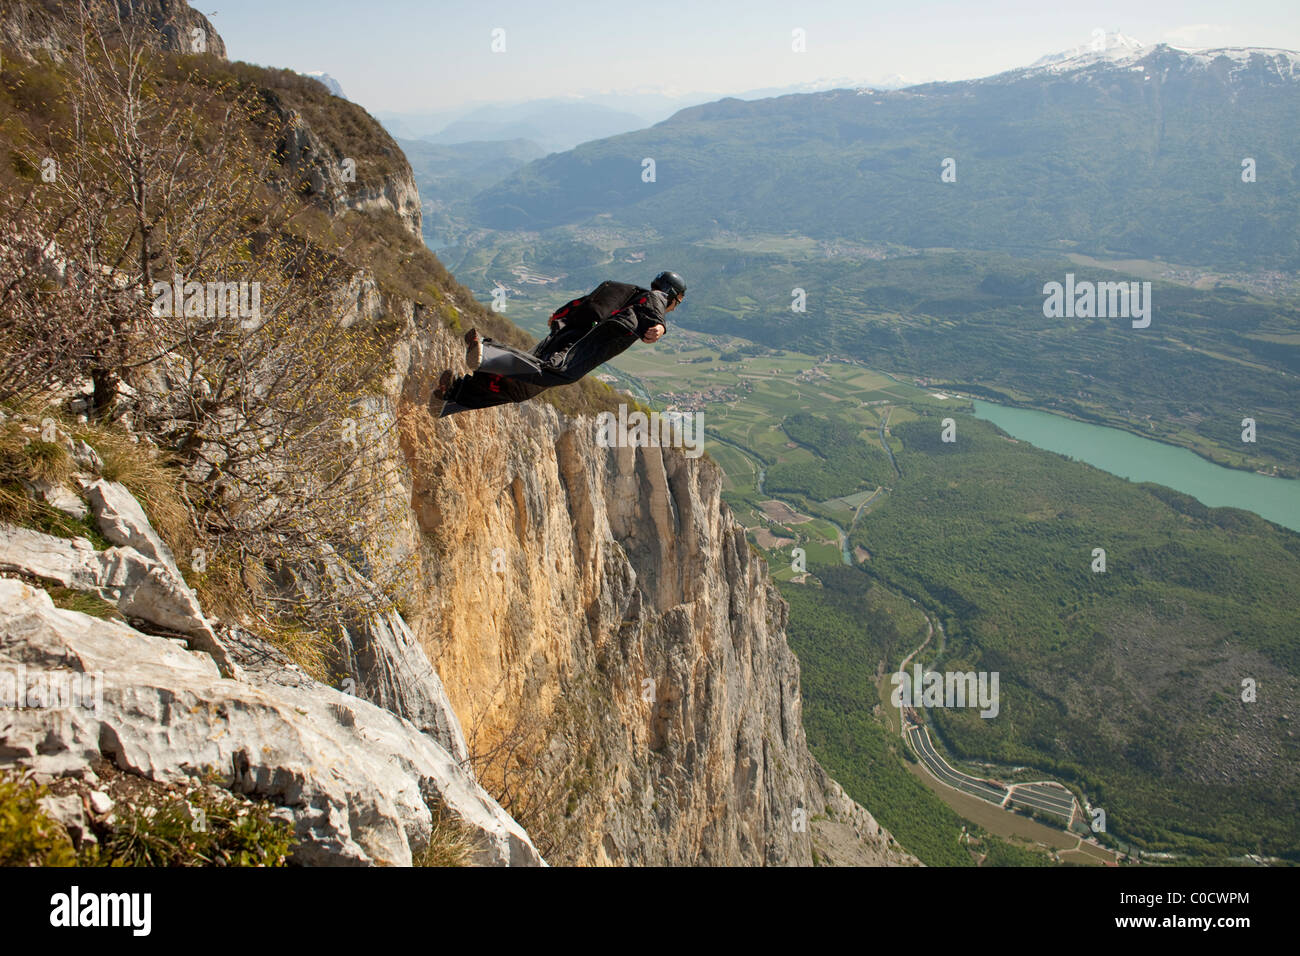 BASE Taucher in einem Wingsuit springt von Klippe und fliegt nach unten ins Tal. Stockfoto